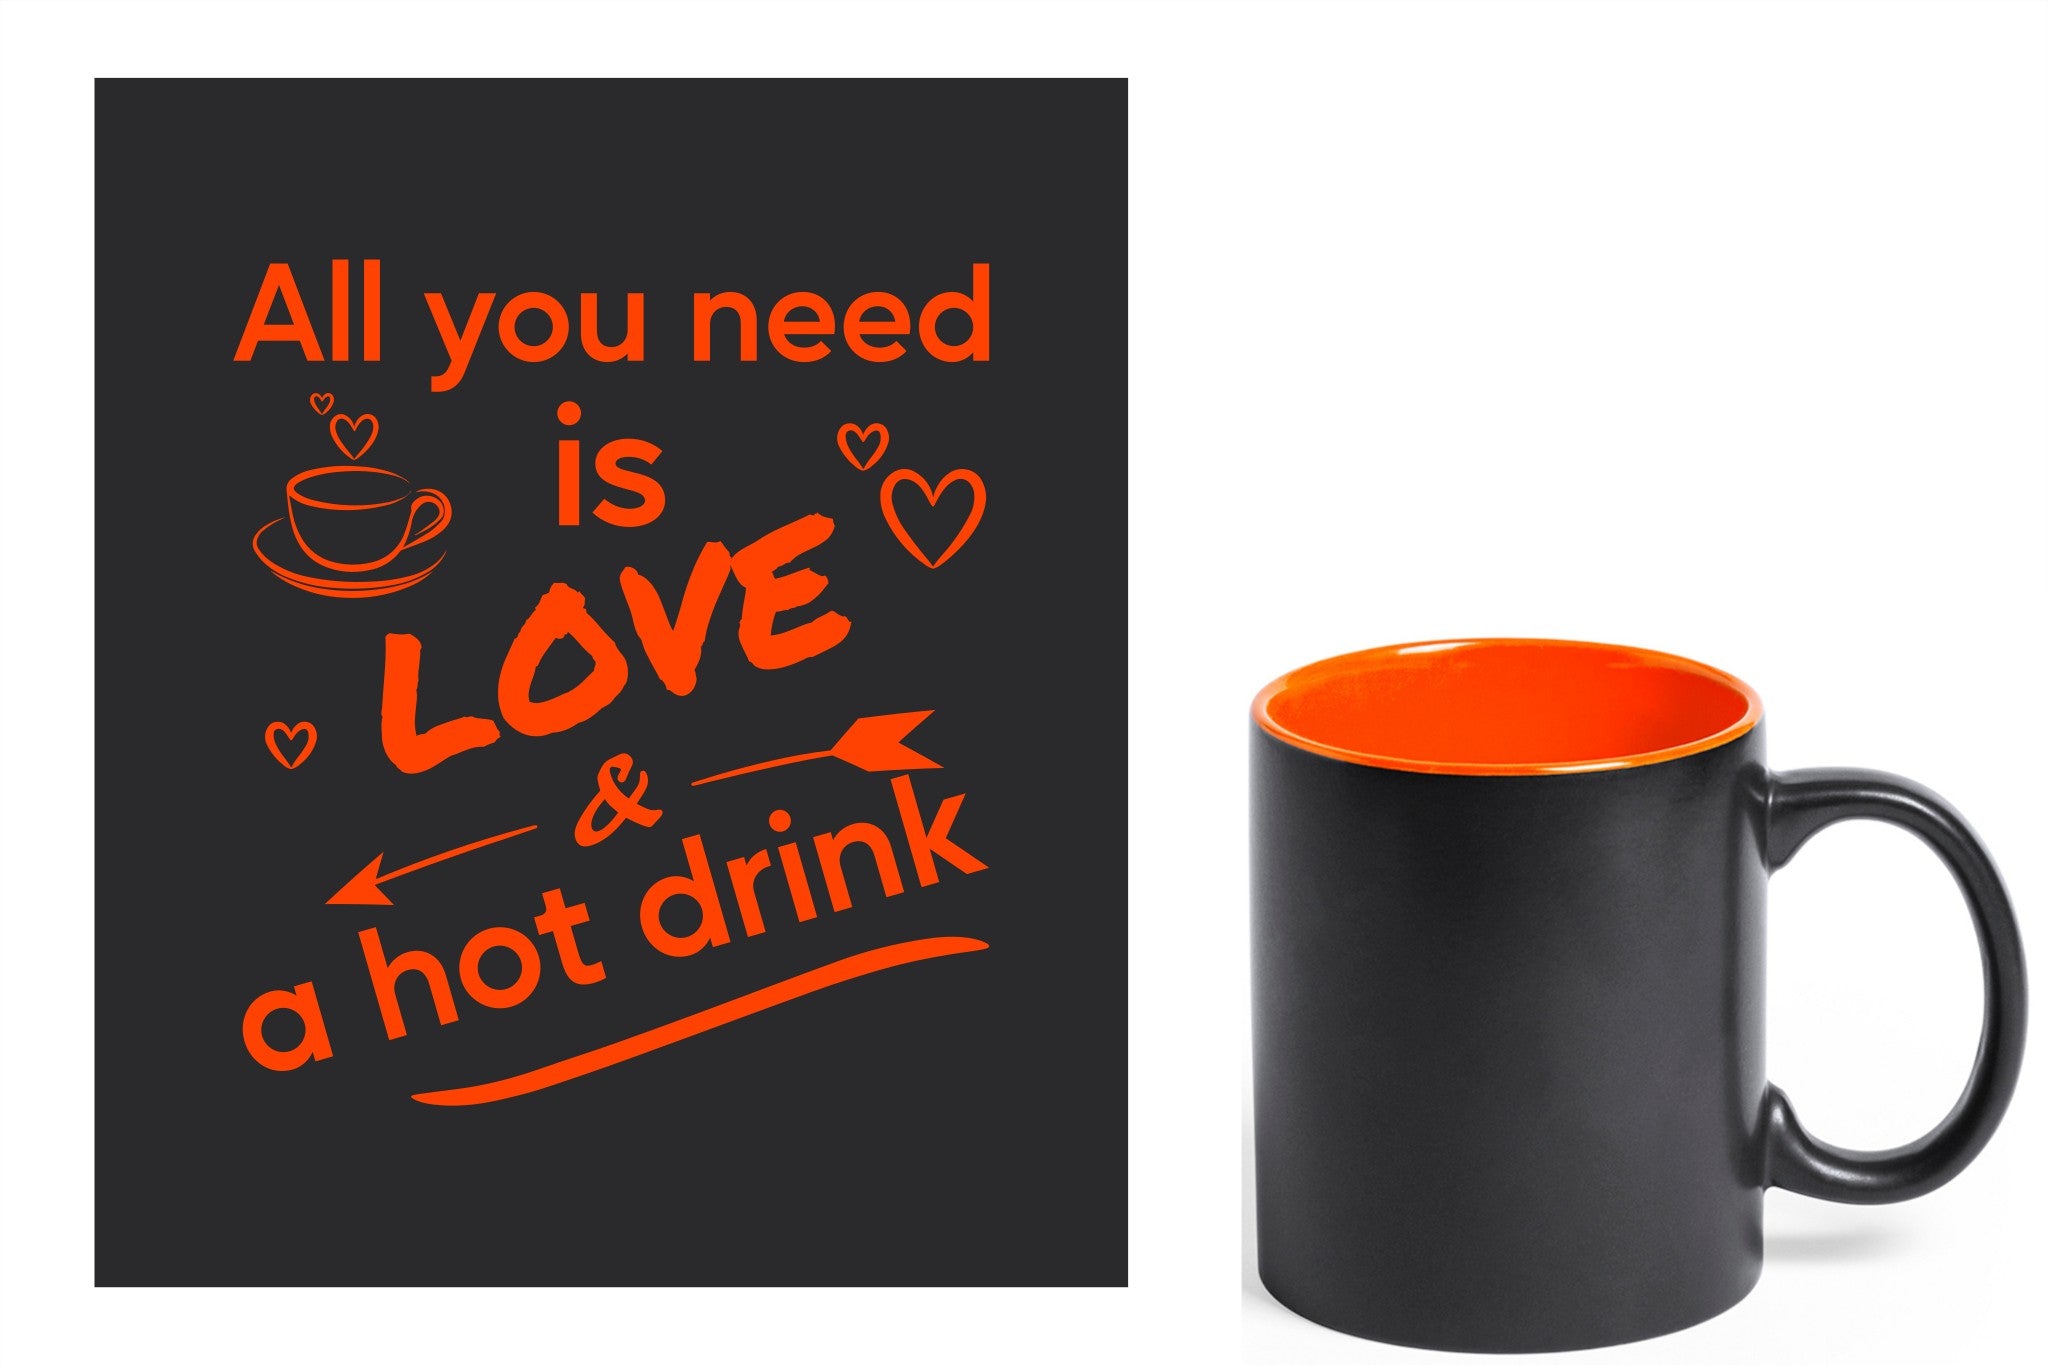 zwarte keramische mok met oranje gravure  'All you need is love & a hot drink'.